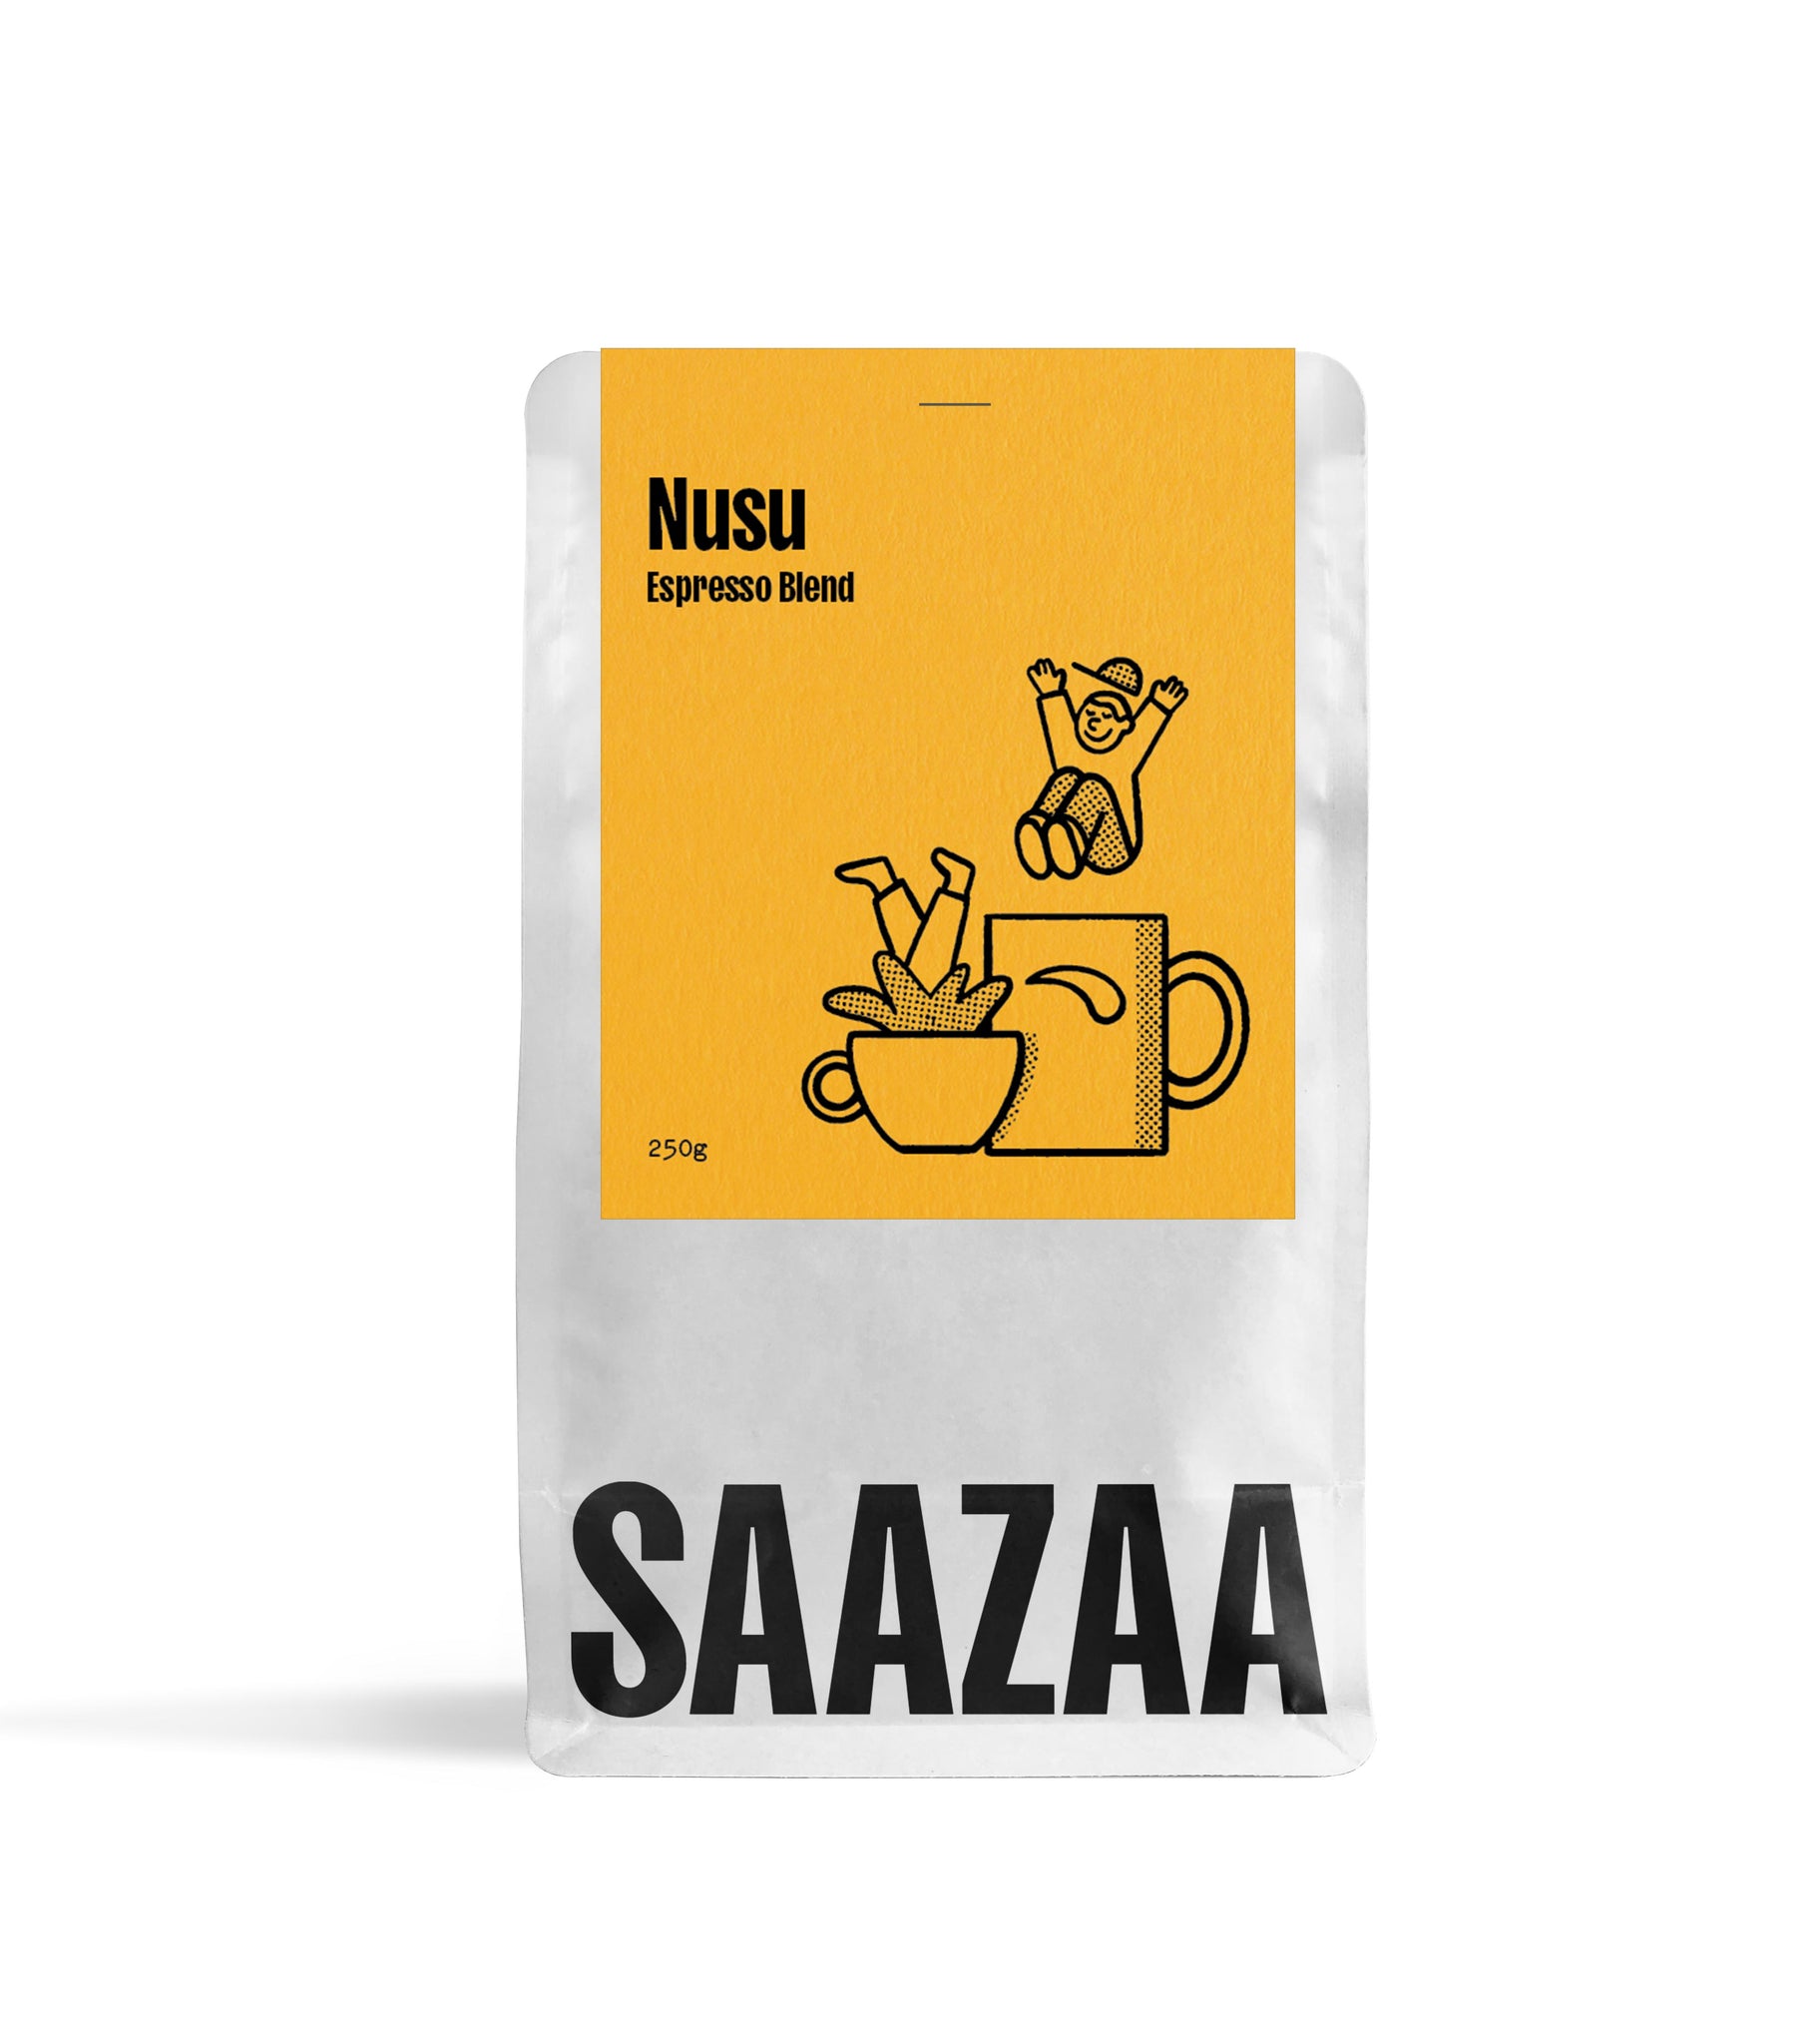 Nusu – Espresso